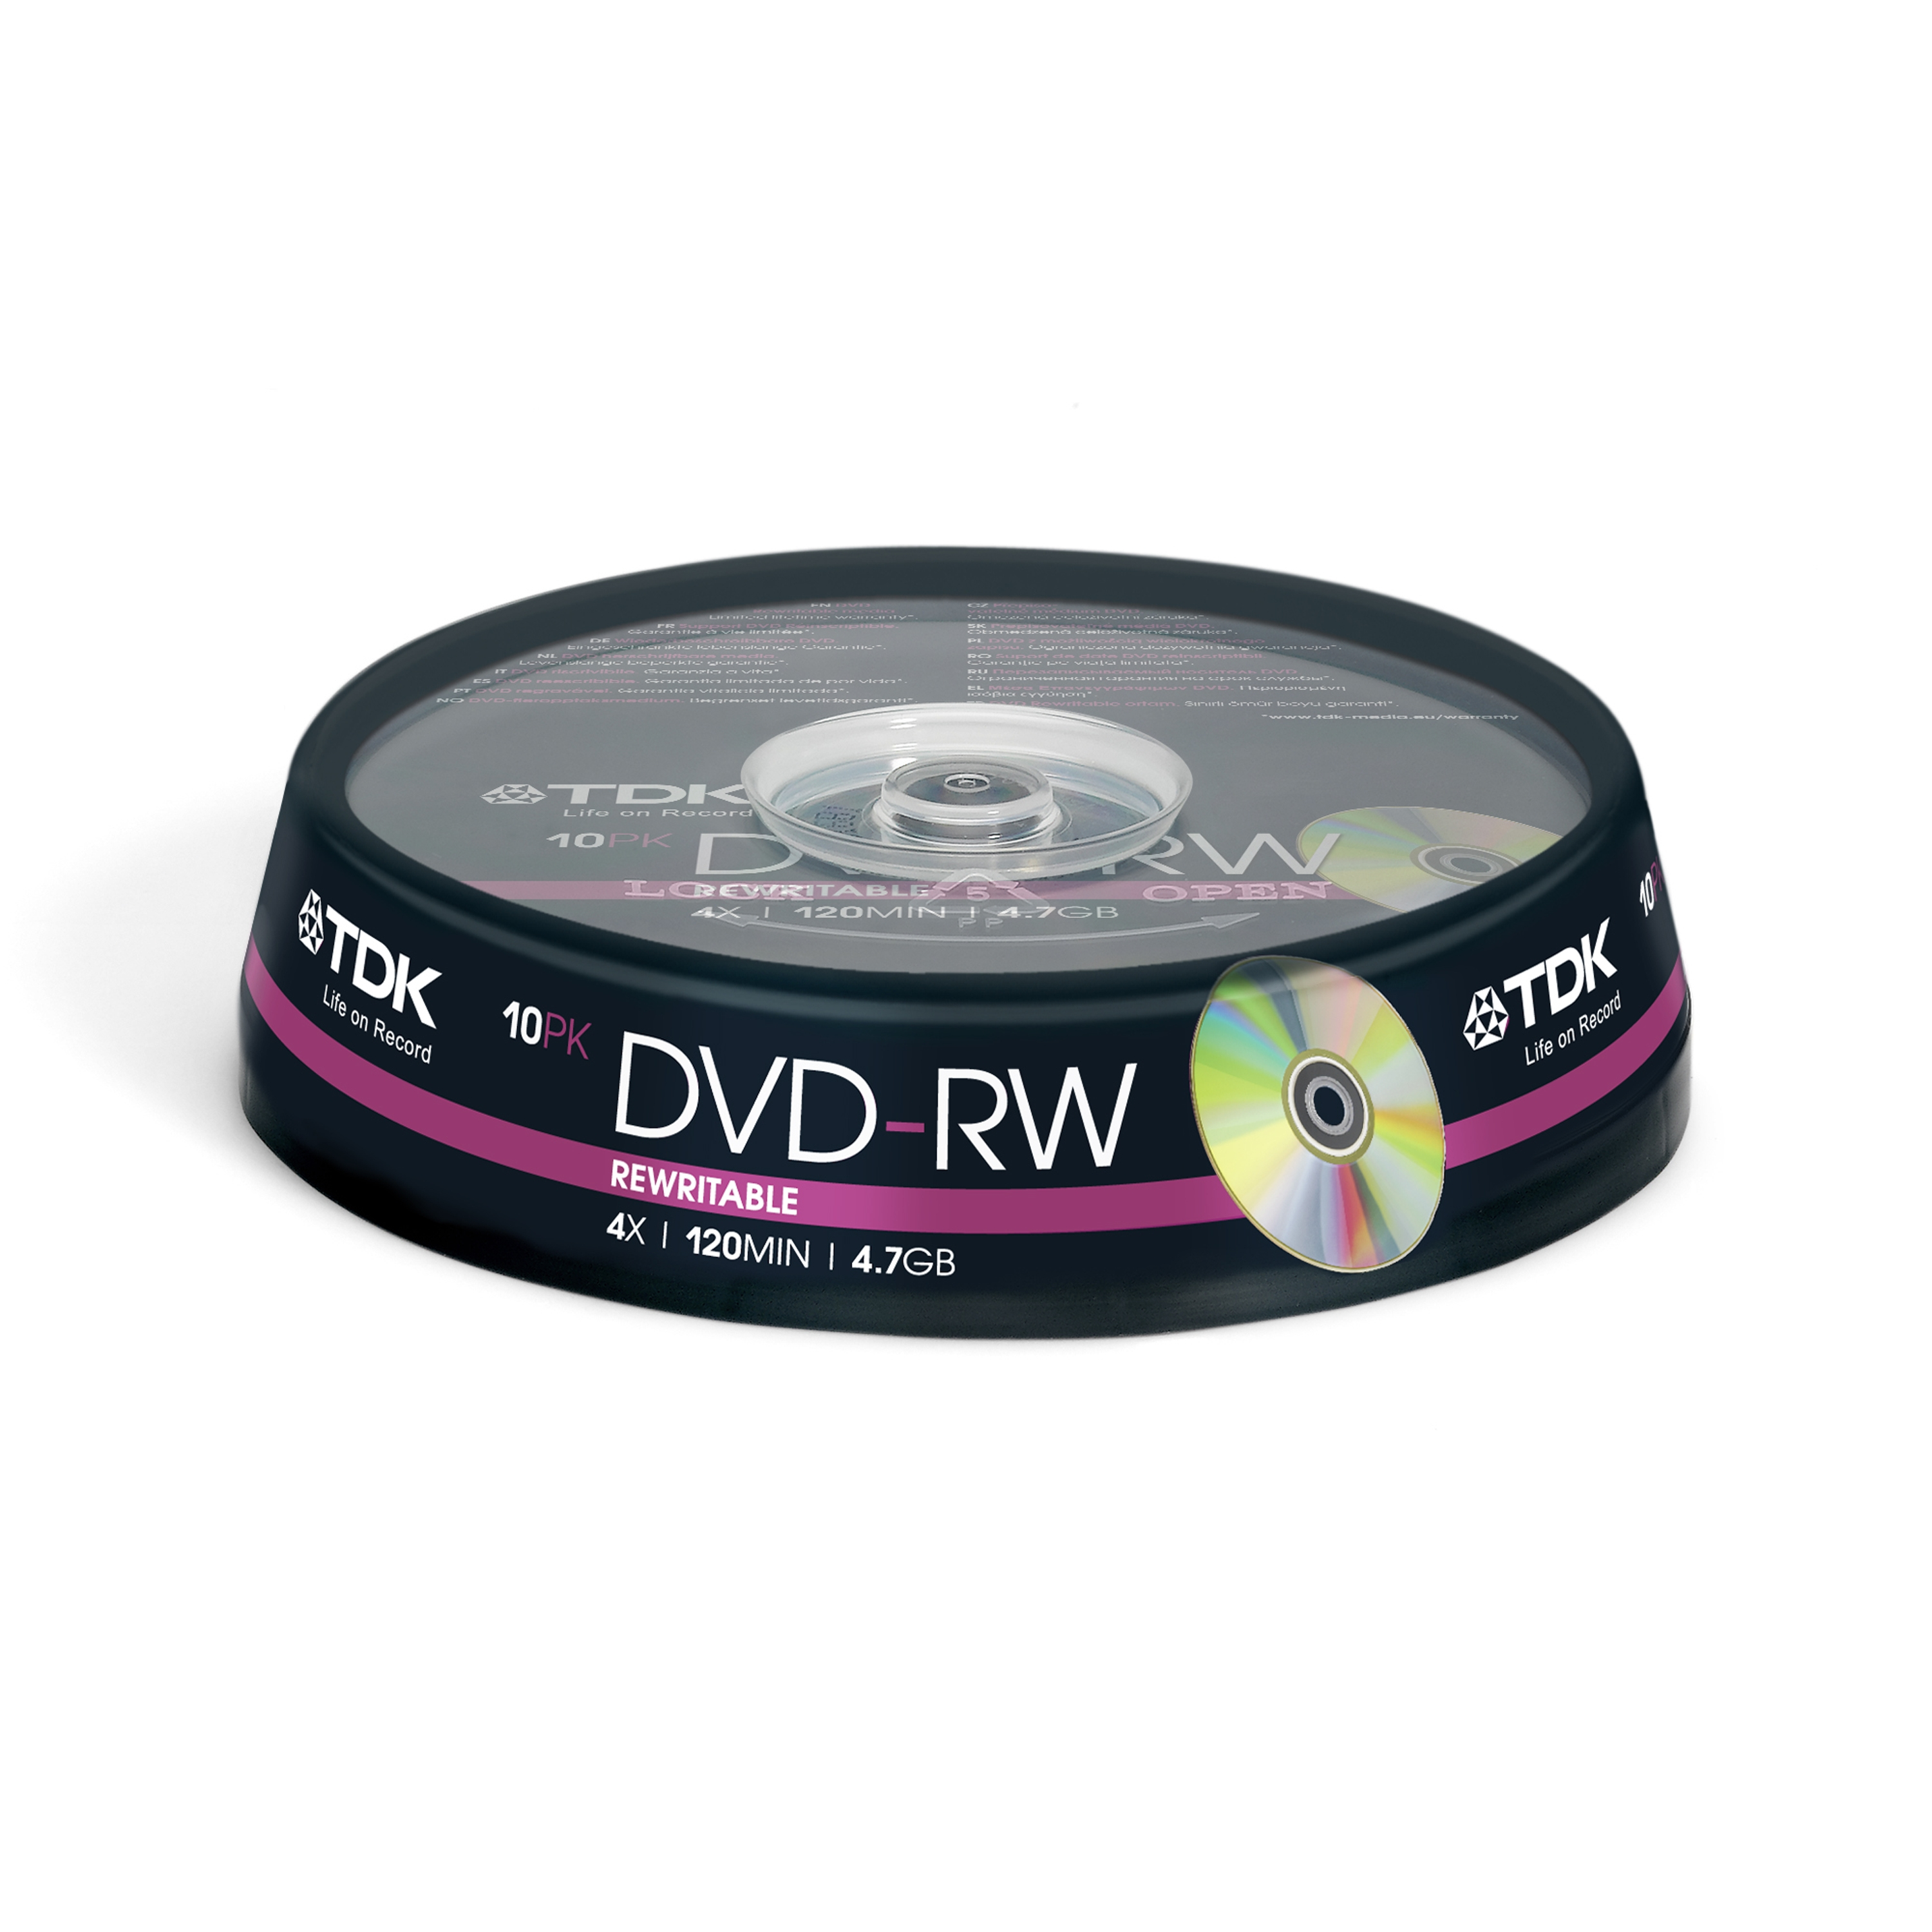 Tdk00025ma     Dvd-r 4.7gb 2x-4x 10pk         Tdk Dvd-rw Cakebox 10 Pack                                   - UF01